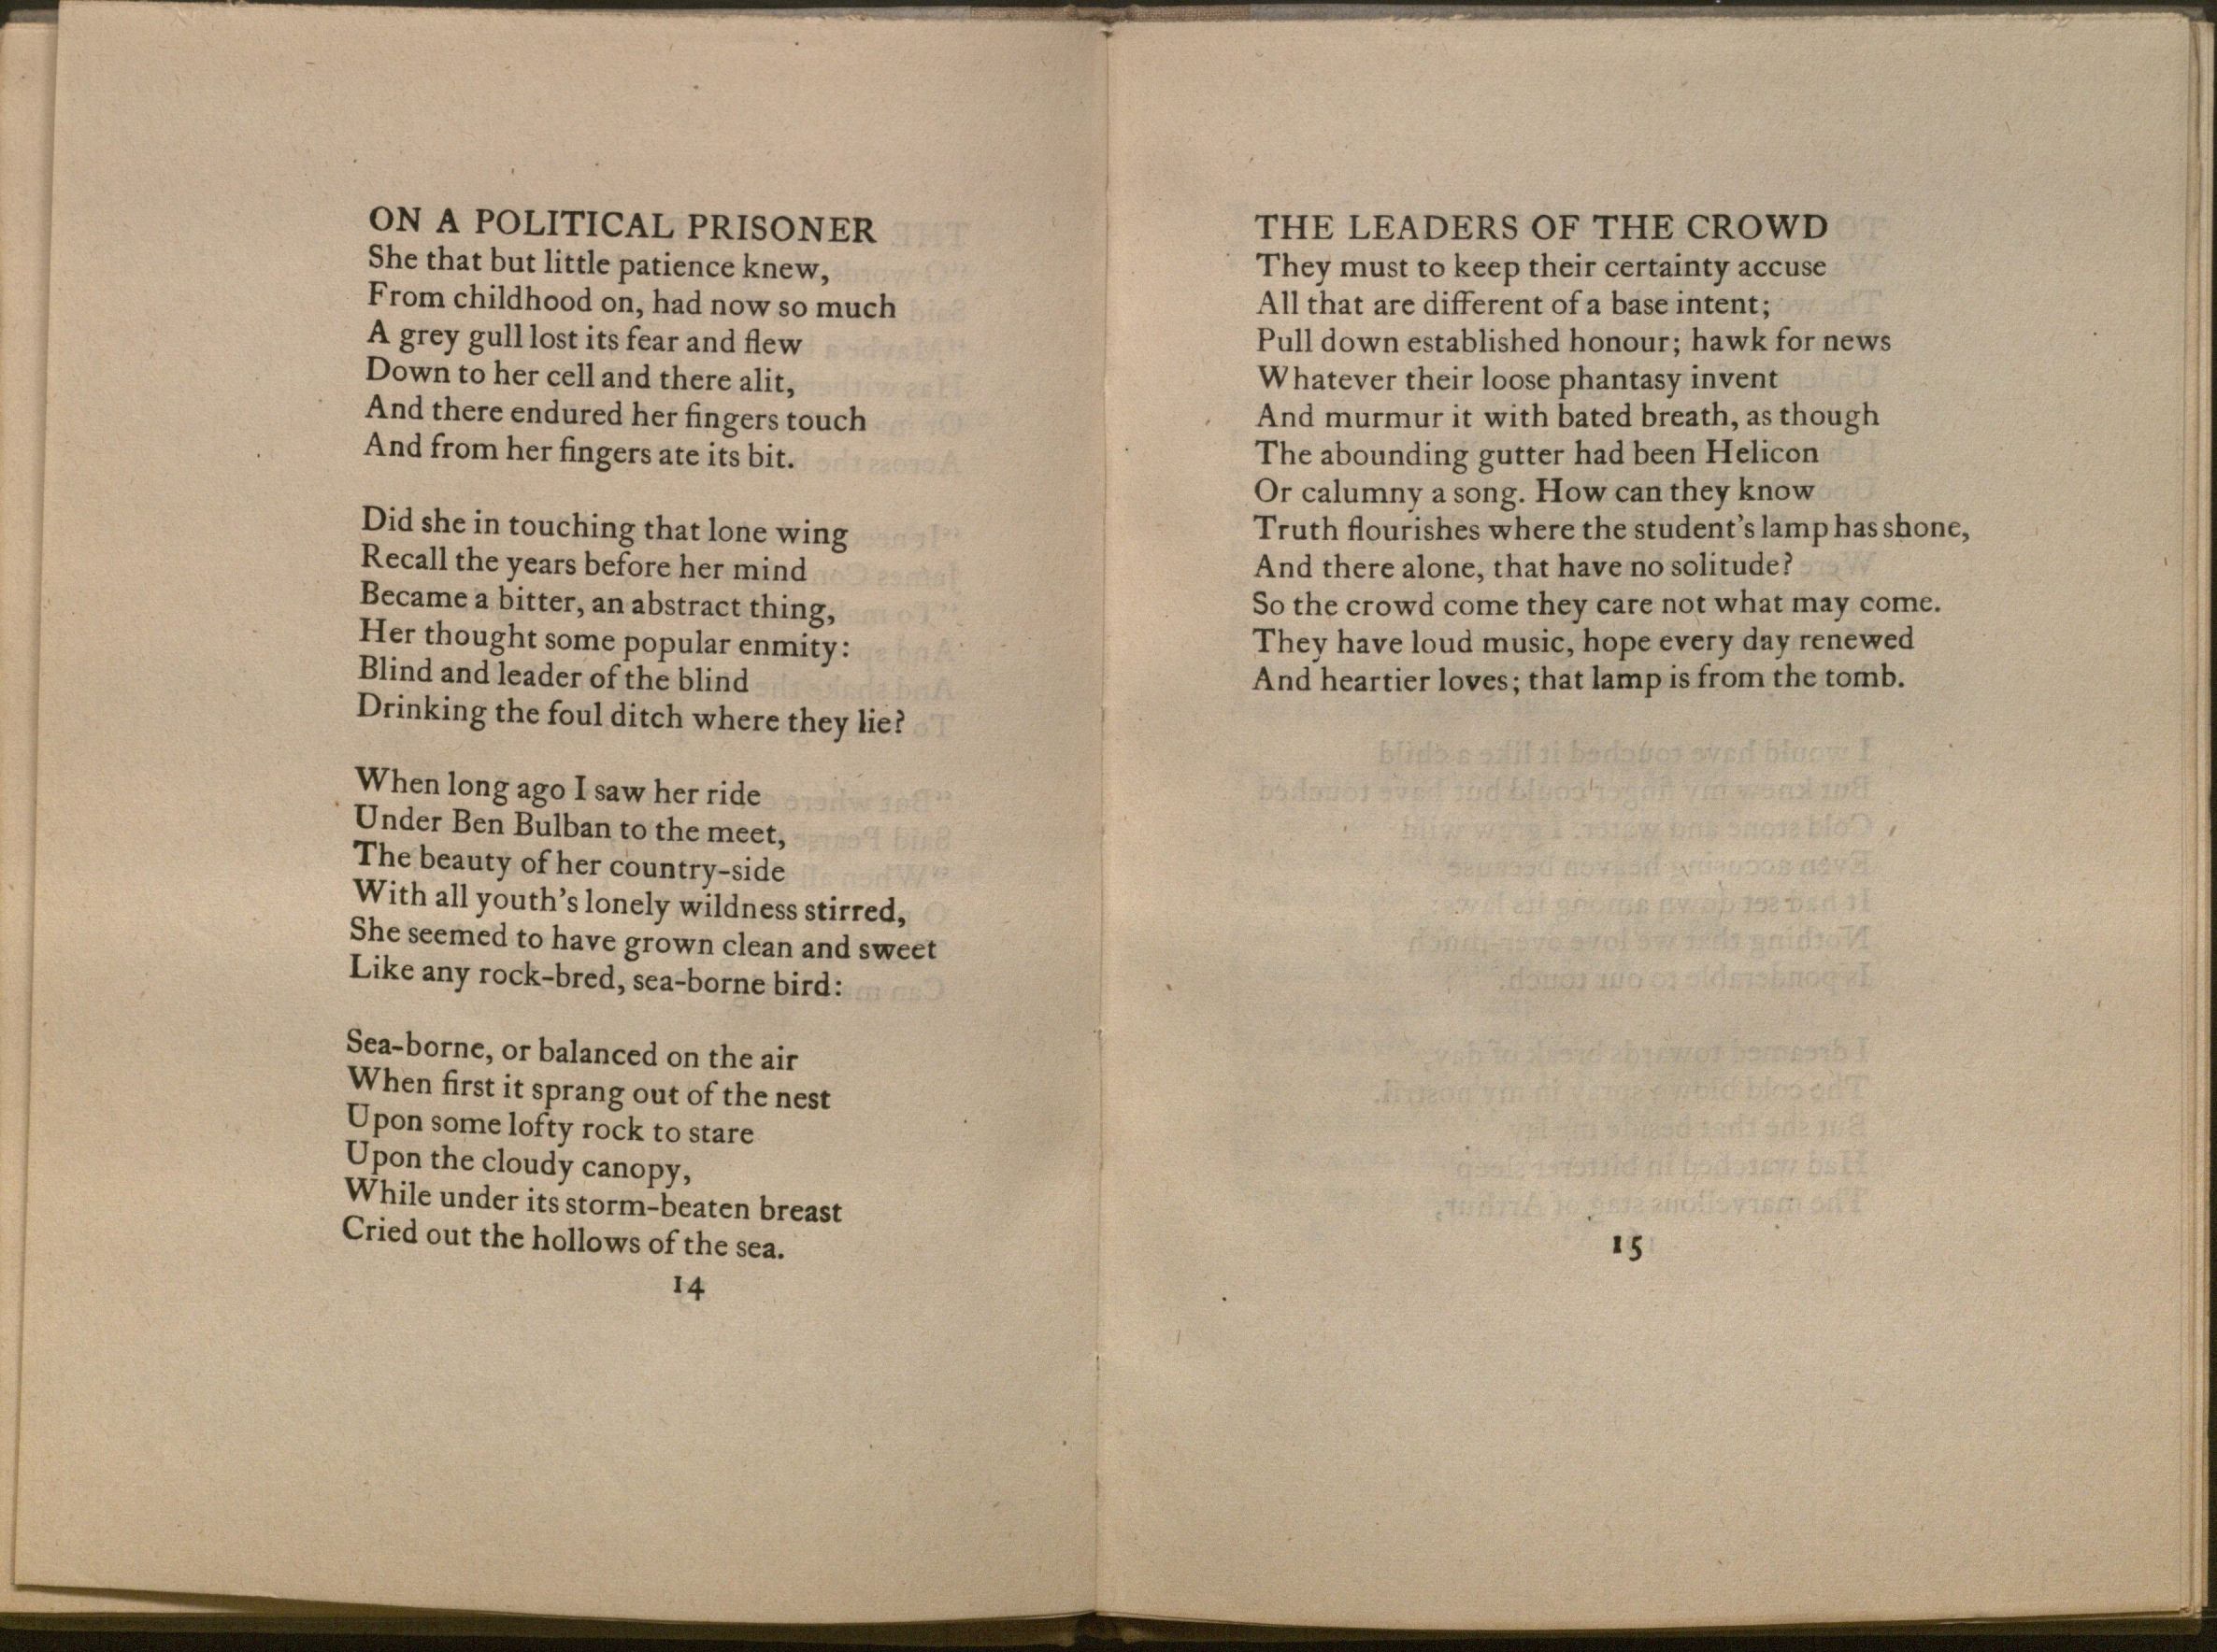 Image of Yeats's poem "On A Political Prisoner"